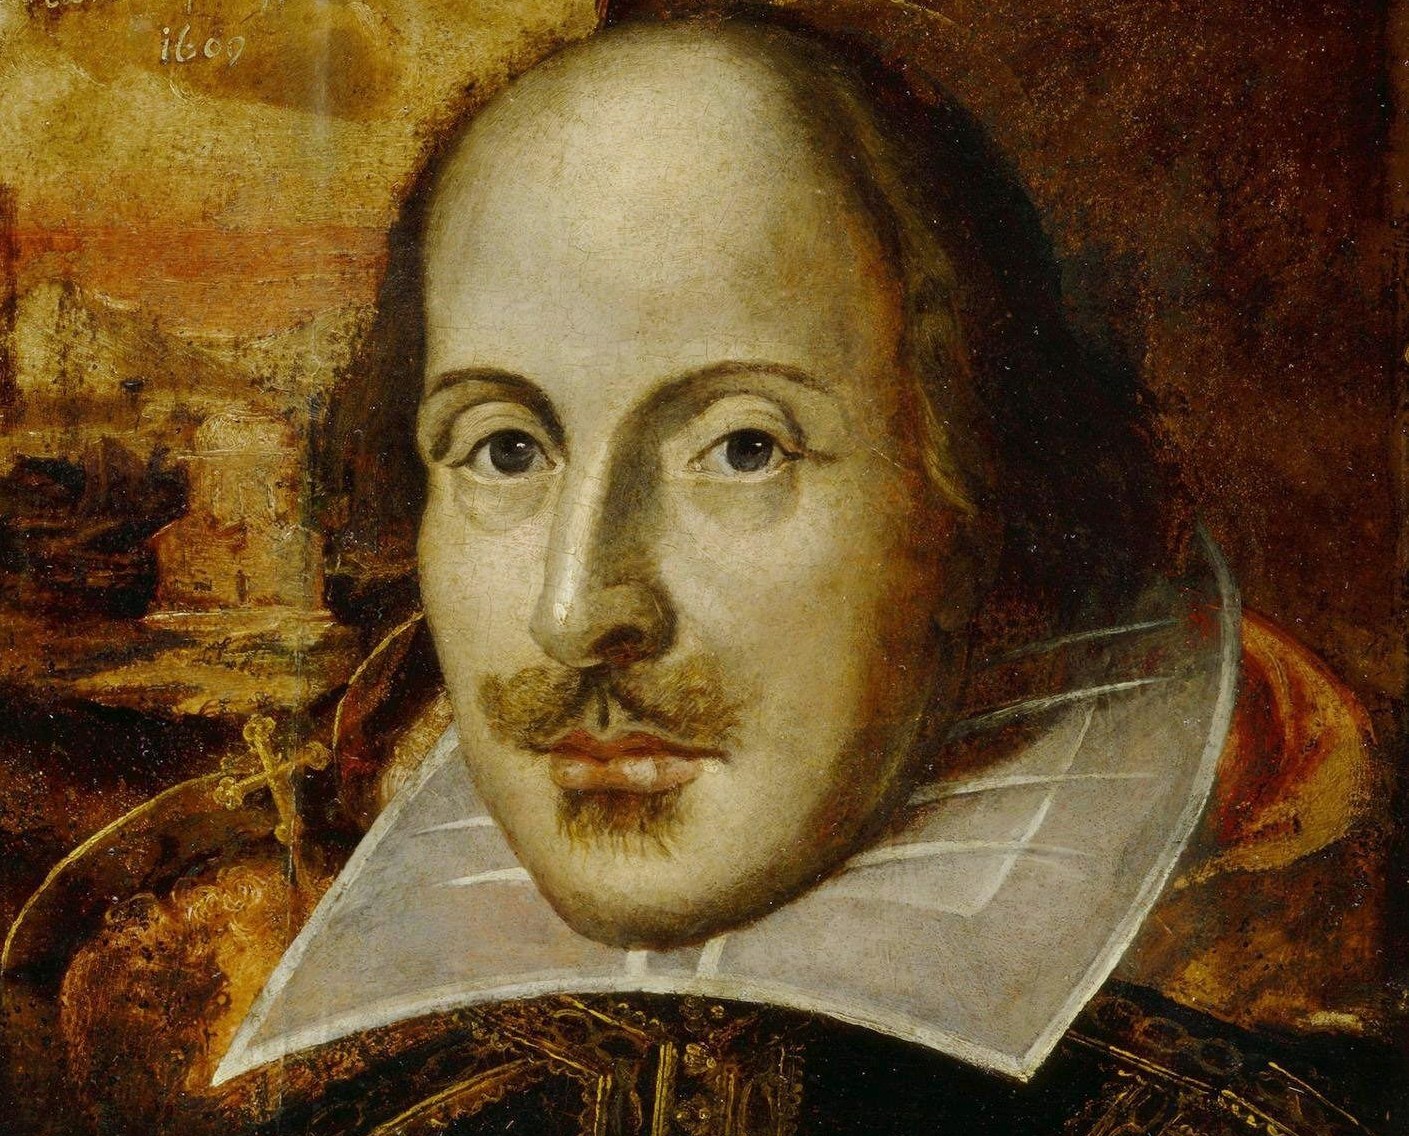 Цього дня народився видатний англійський поет Вільям Шекспір